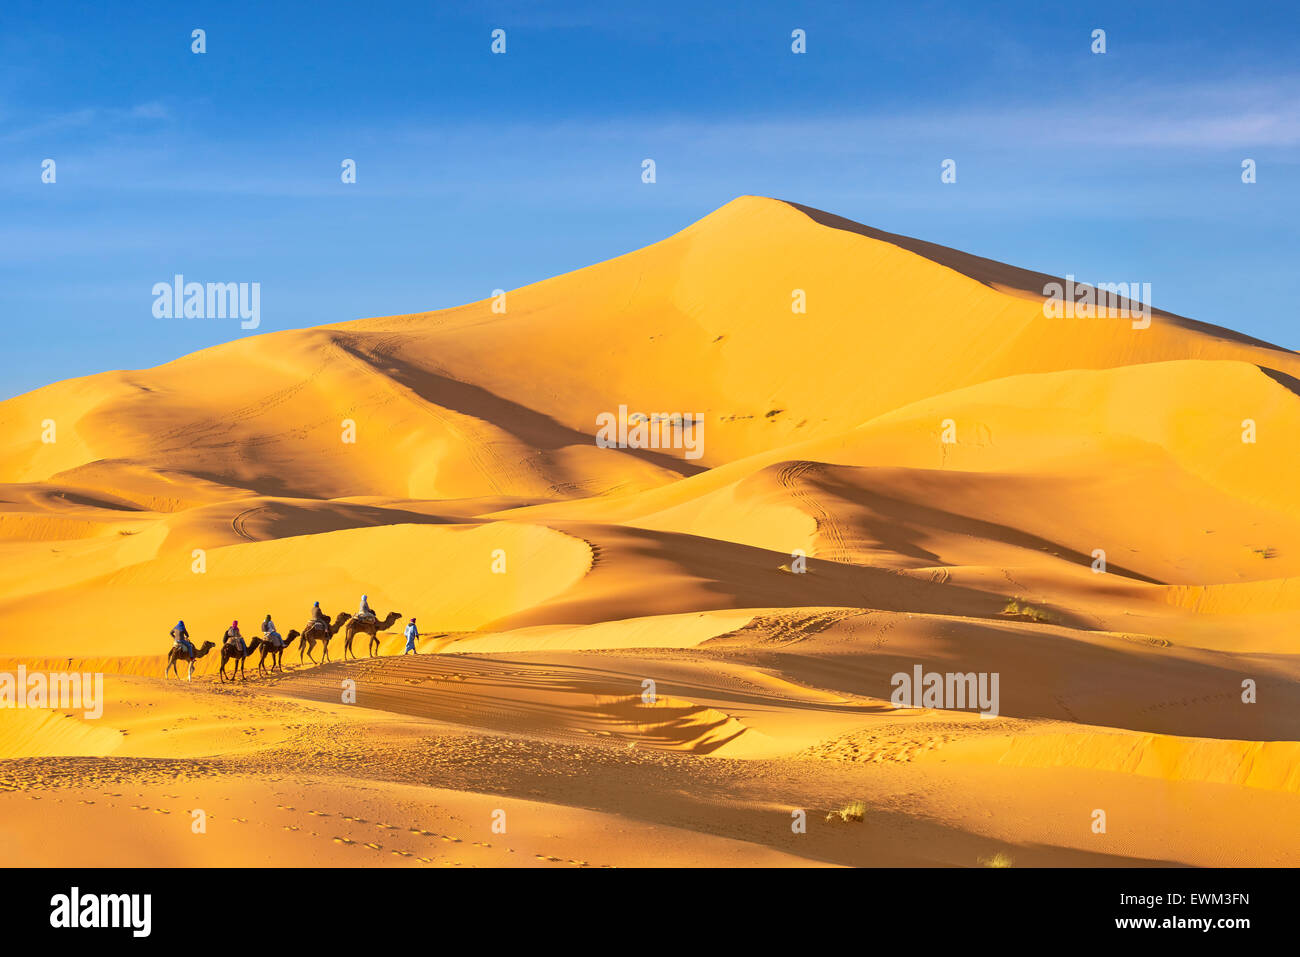 Touristen zu reiten auf Kamelen, Erg Chebbi Wüste bei Merzouga, Sahara, Marokko Stockfoto